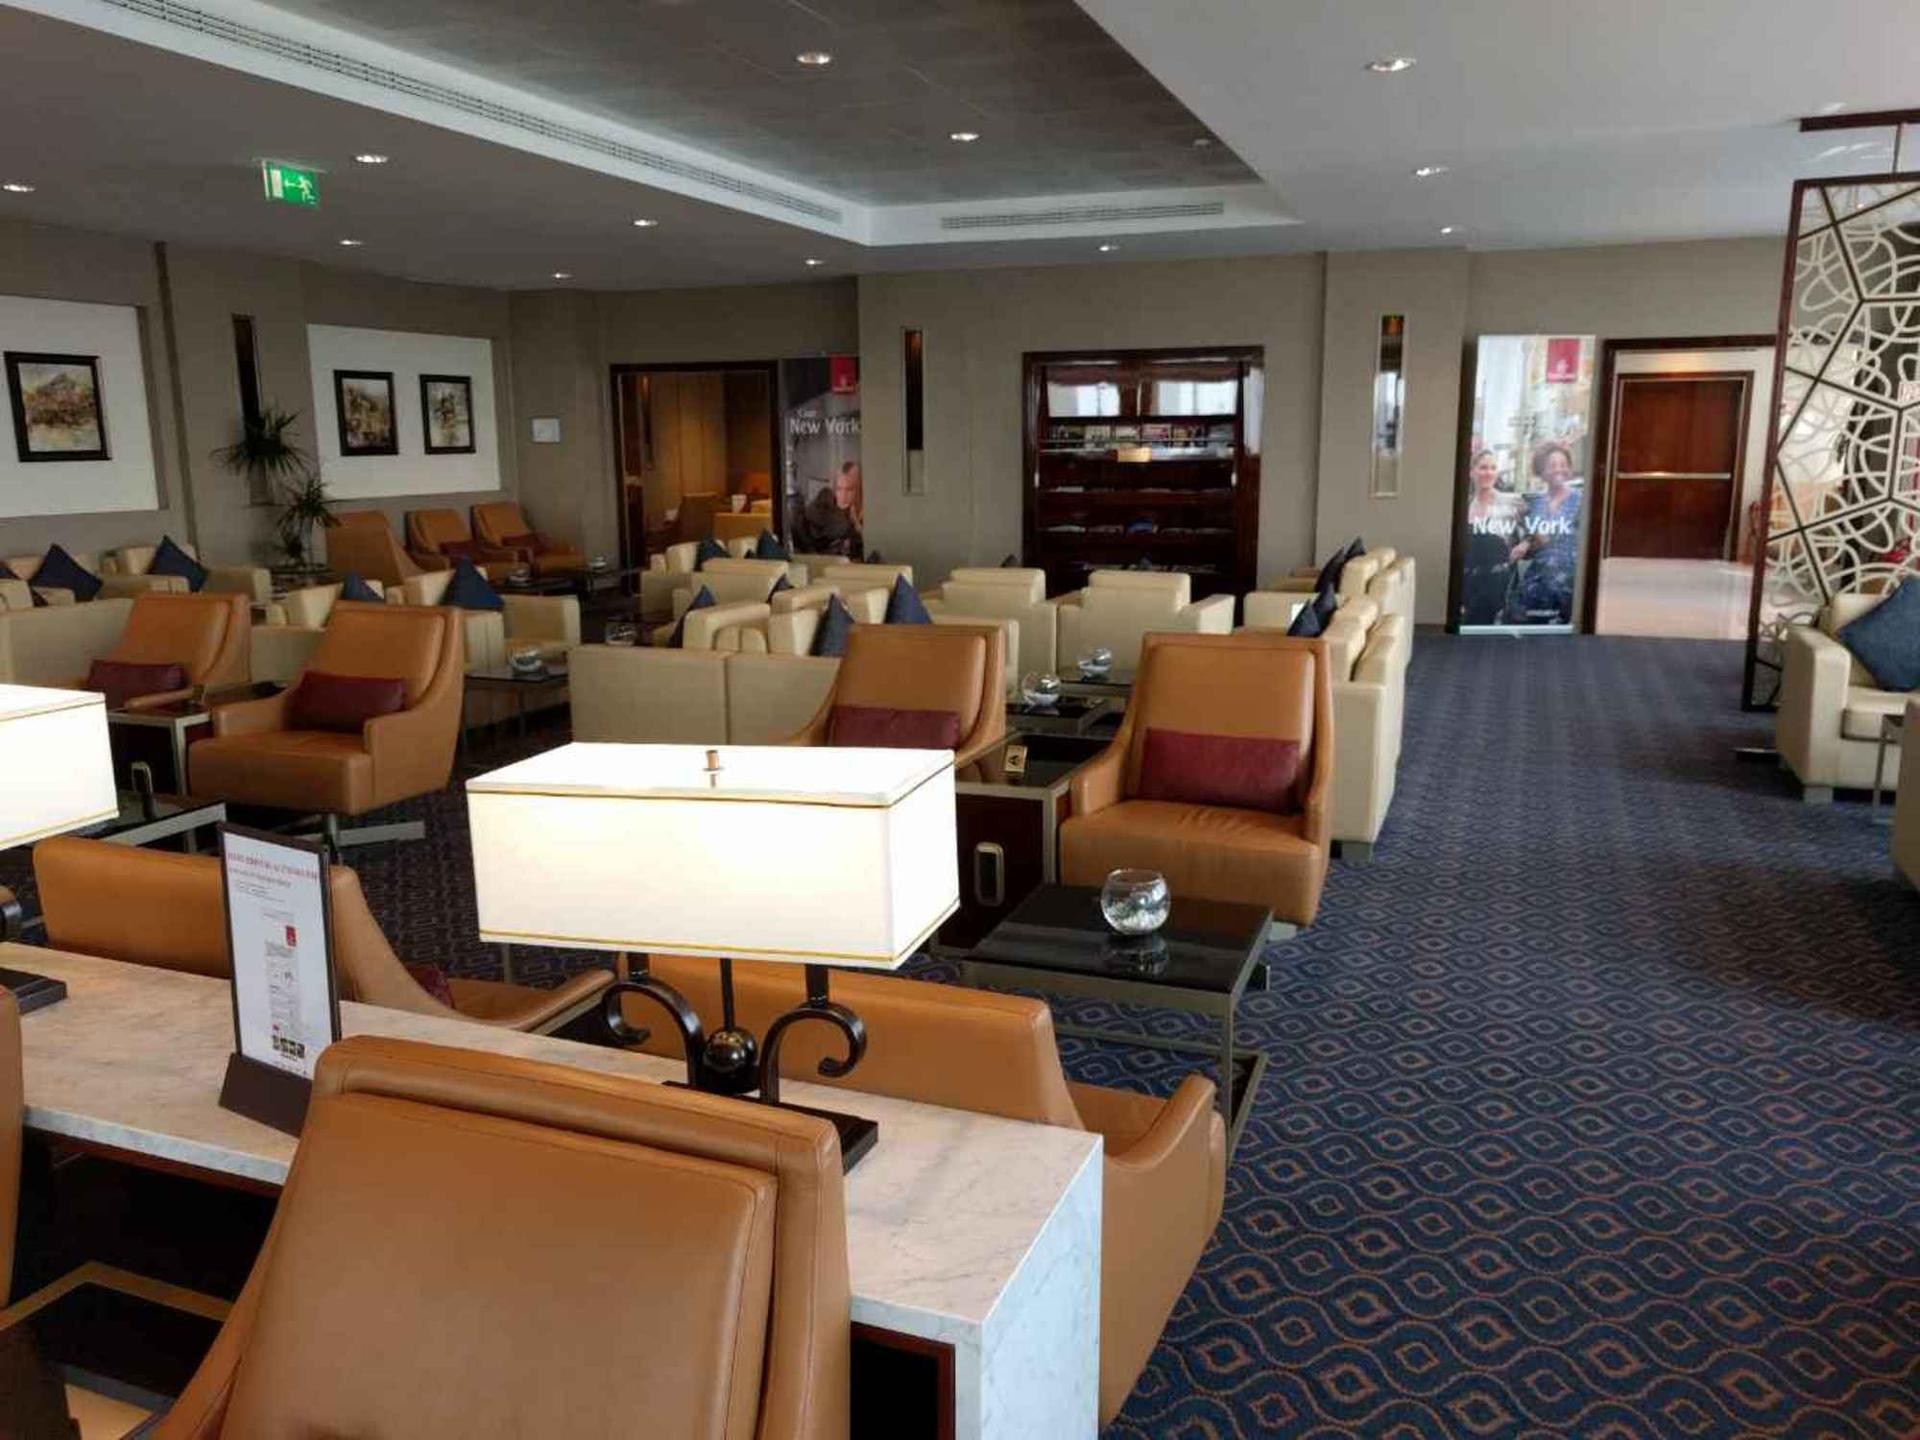 The Emirates Lounge image 8 of 13